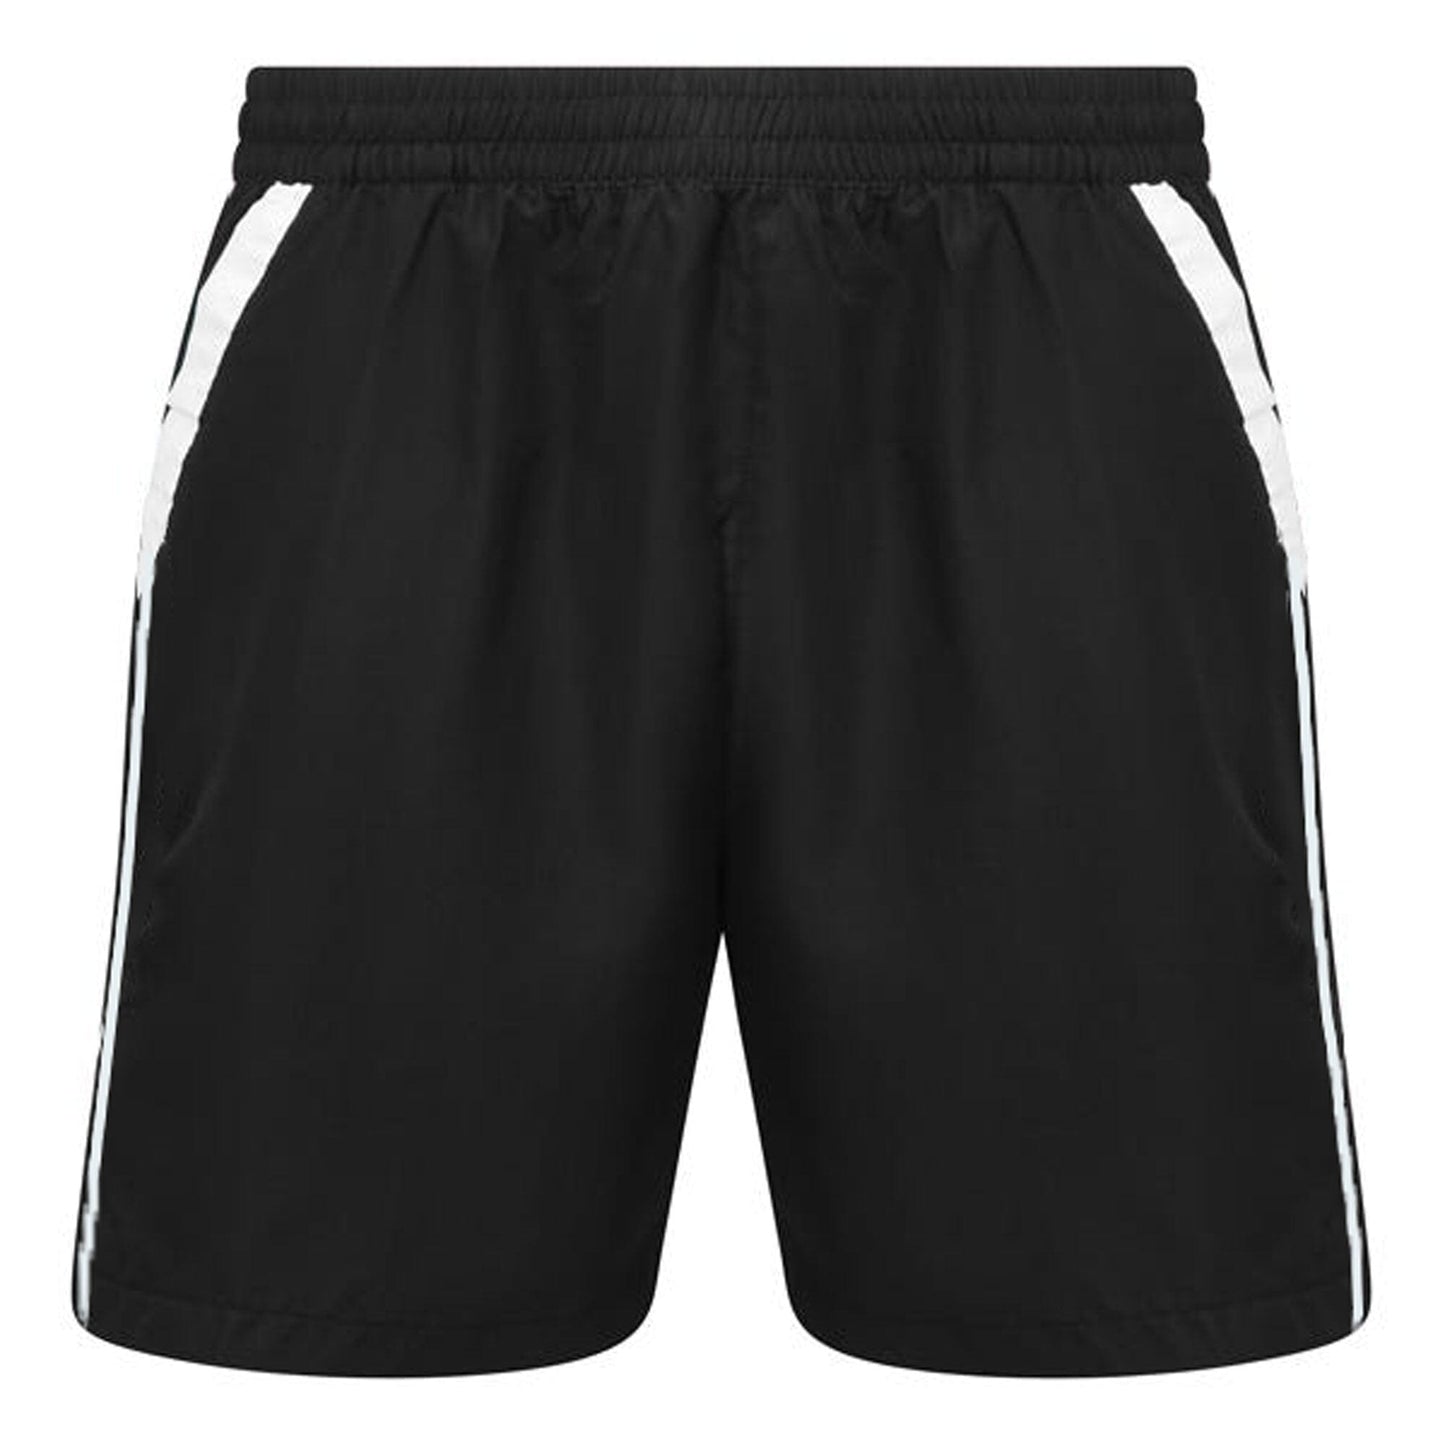 Buy IntelliSoft Hype Cotton Rich [Pich Black] Men's Shorts – XYXX